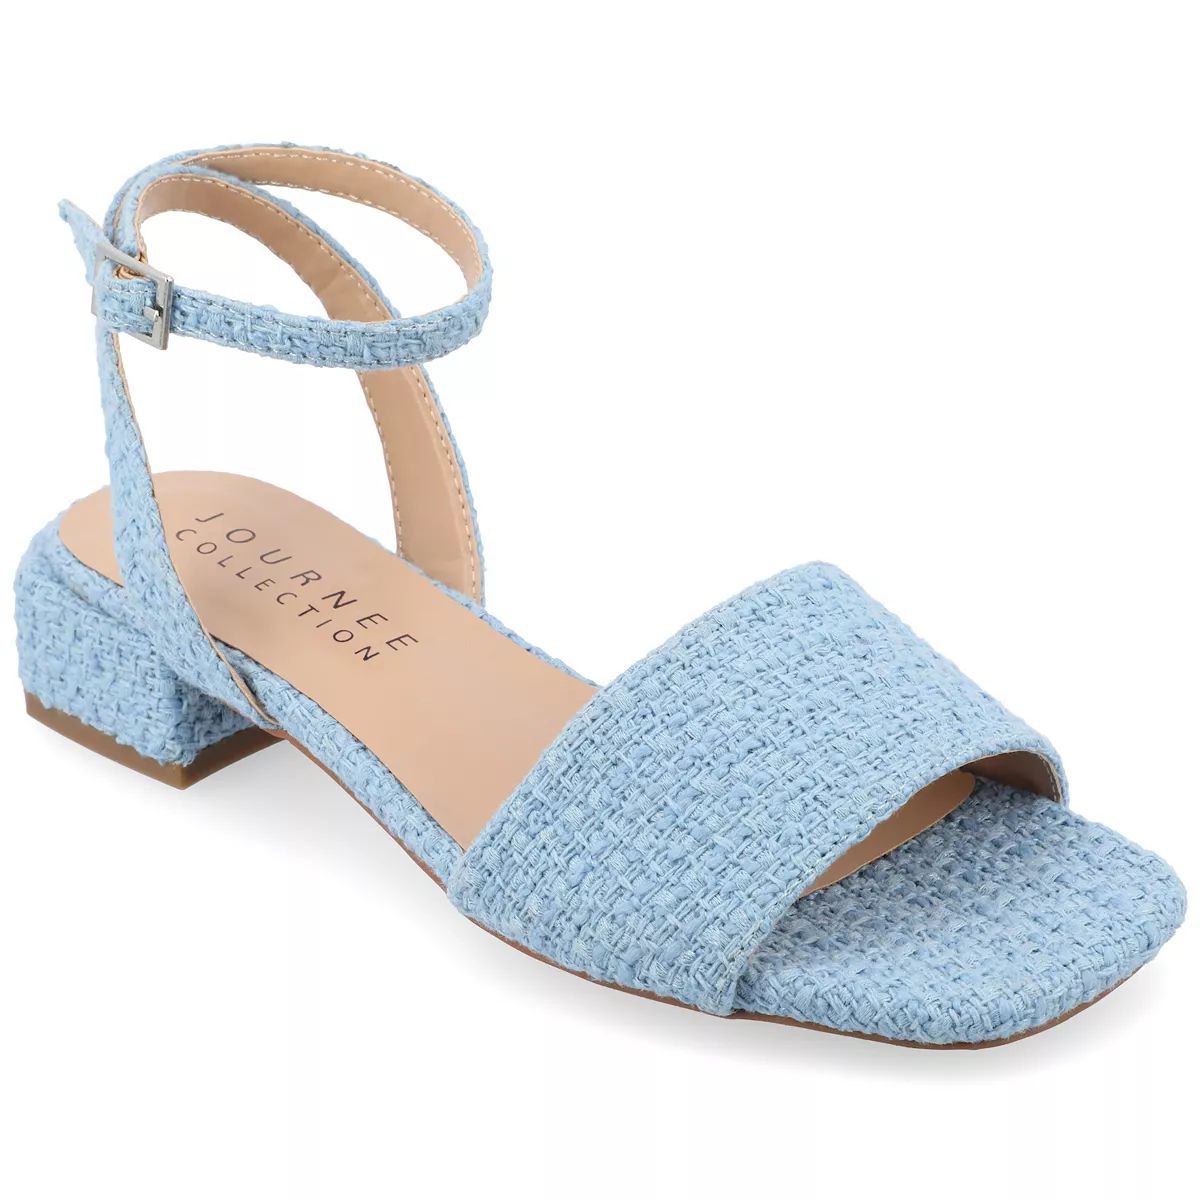 Journee Collection Adleey Women's Tru Comfort Foam Tweed Low Block Heel Sandals | Kohl's